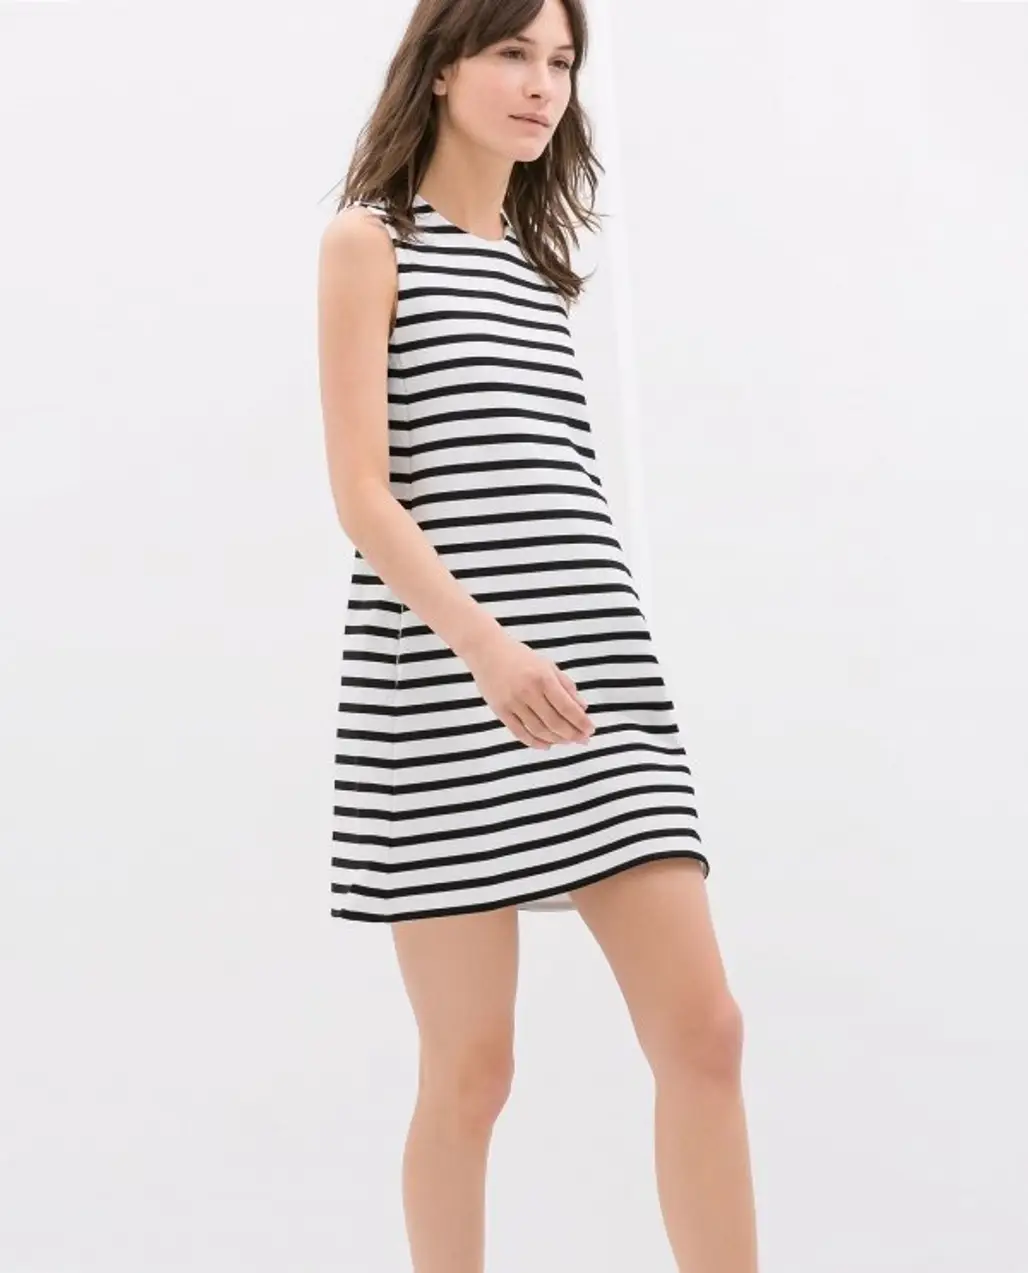 Zara Striped Dress